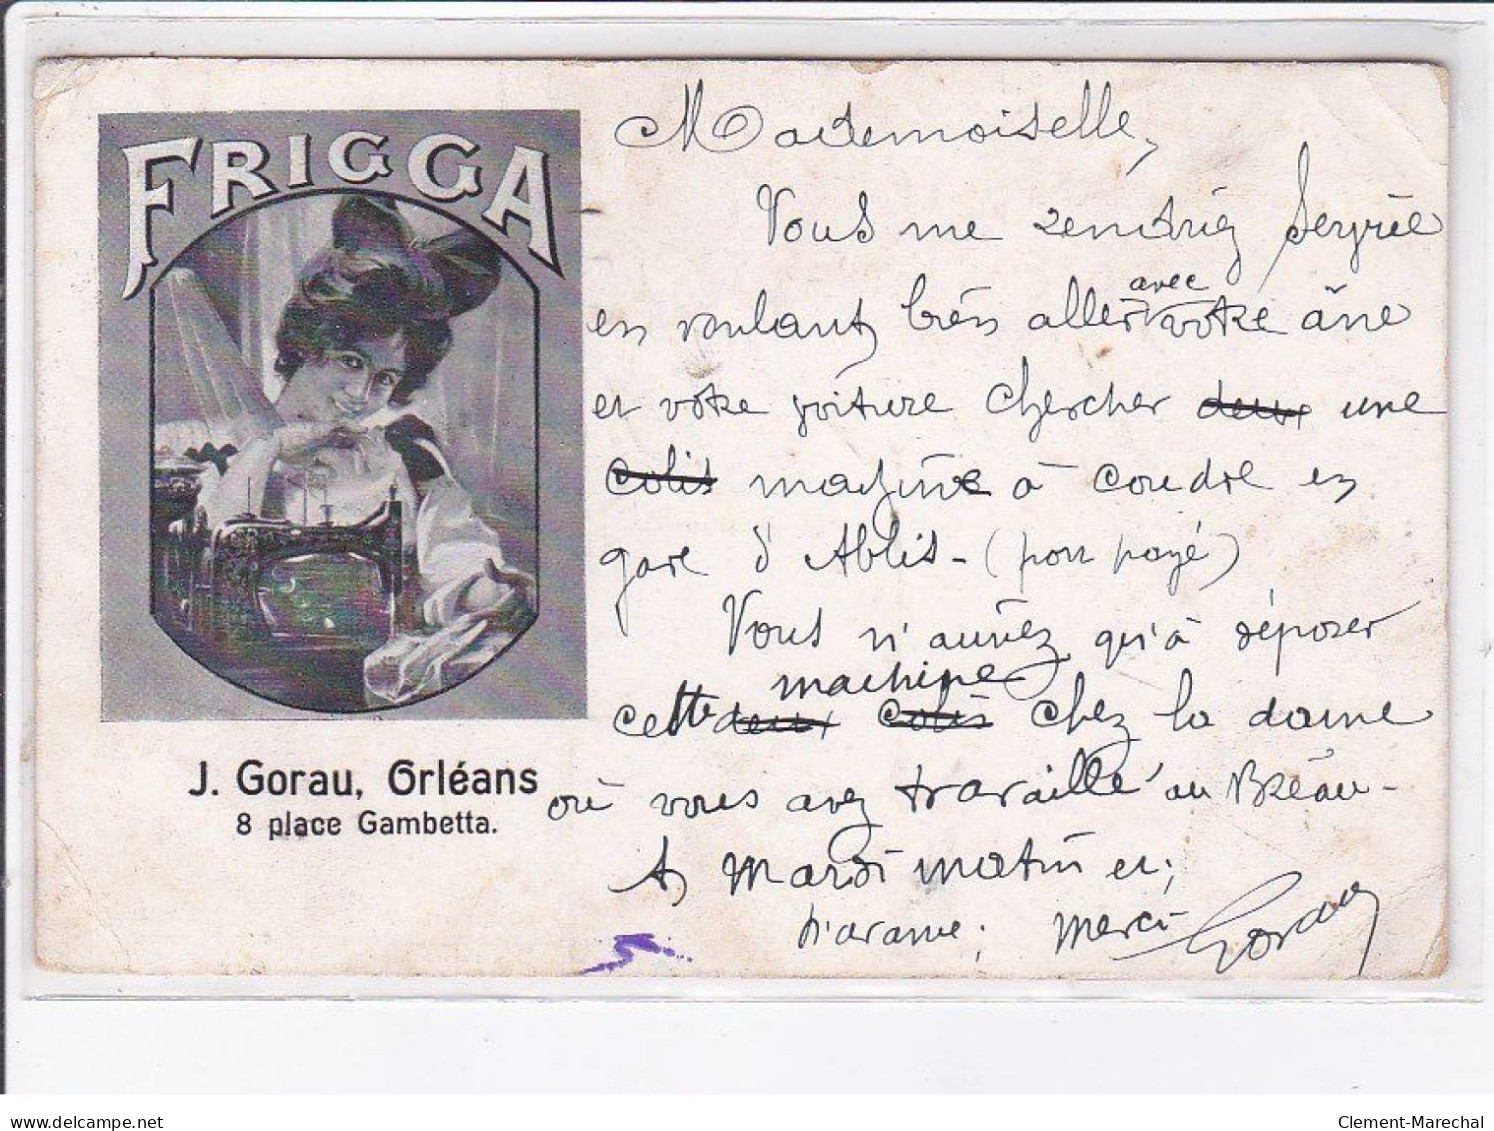 ORLEANS: Frigga, J. Gorau, 8 Place Gambetta, Publicité, Machiine à Coudre - état - Orleans